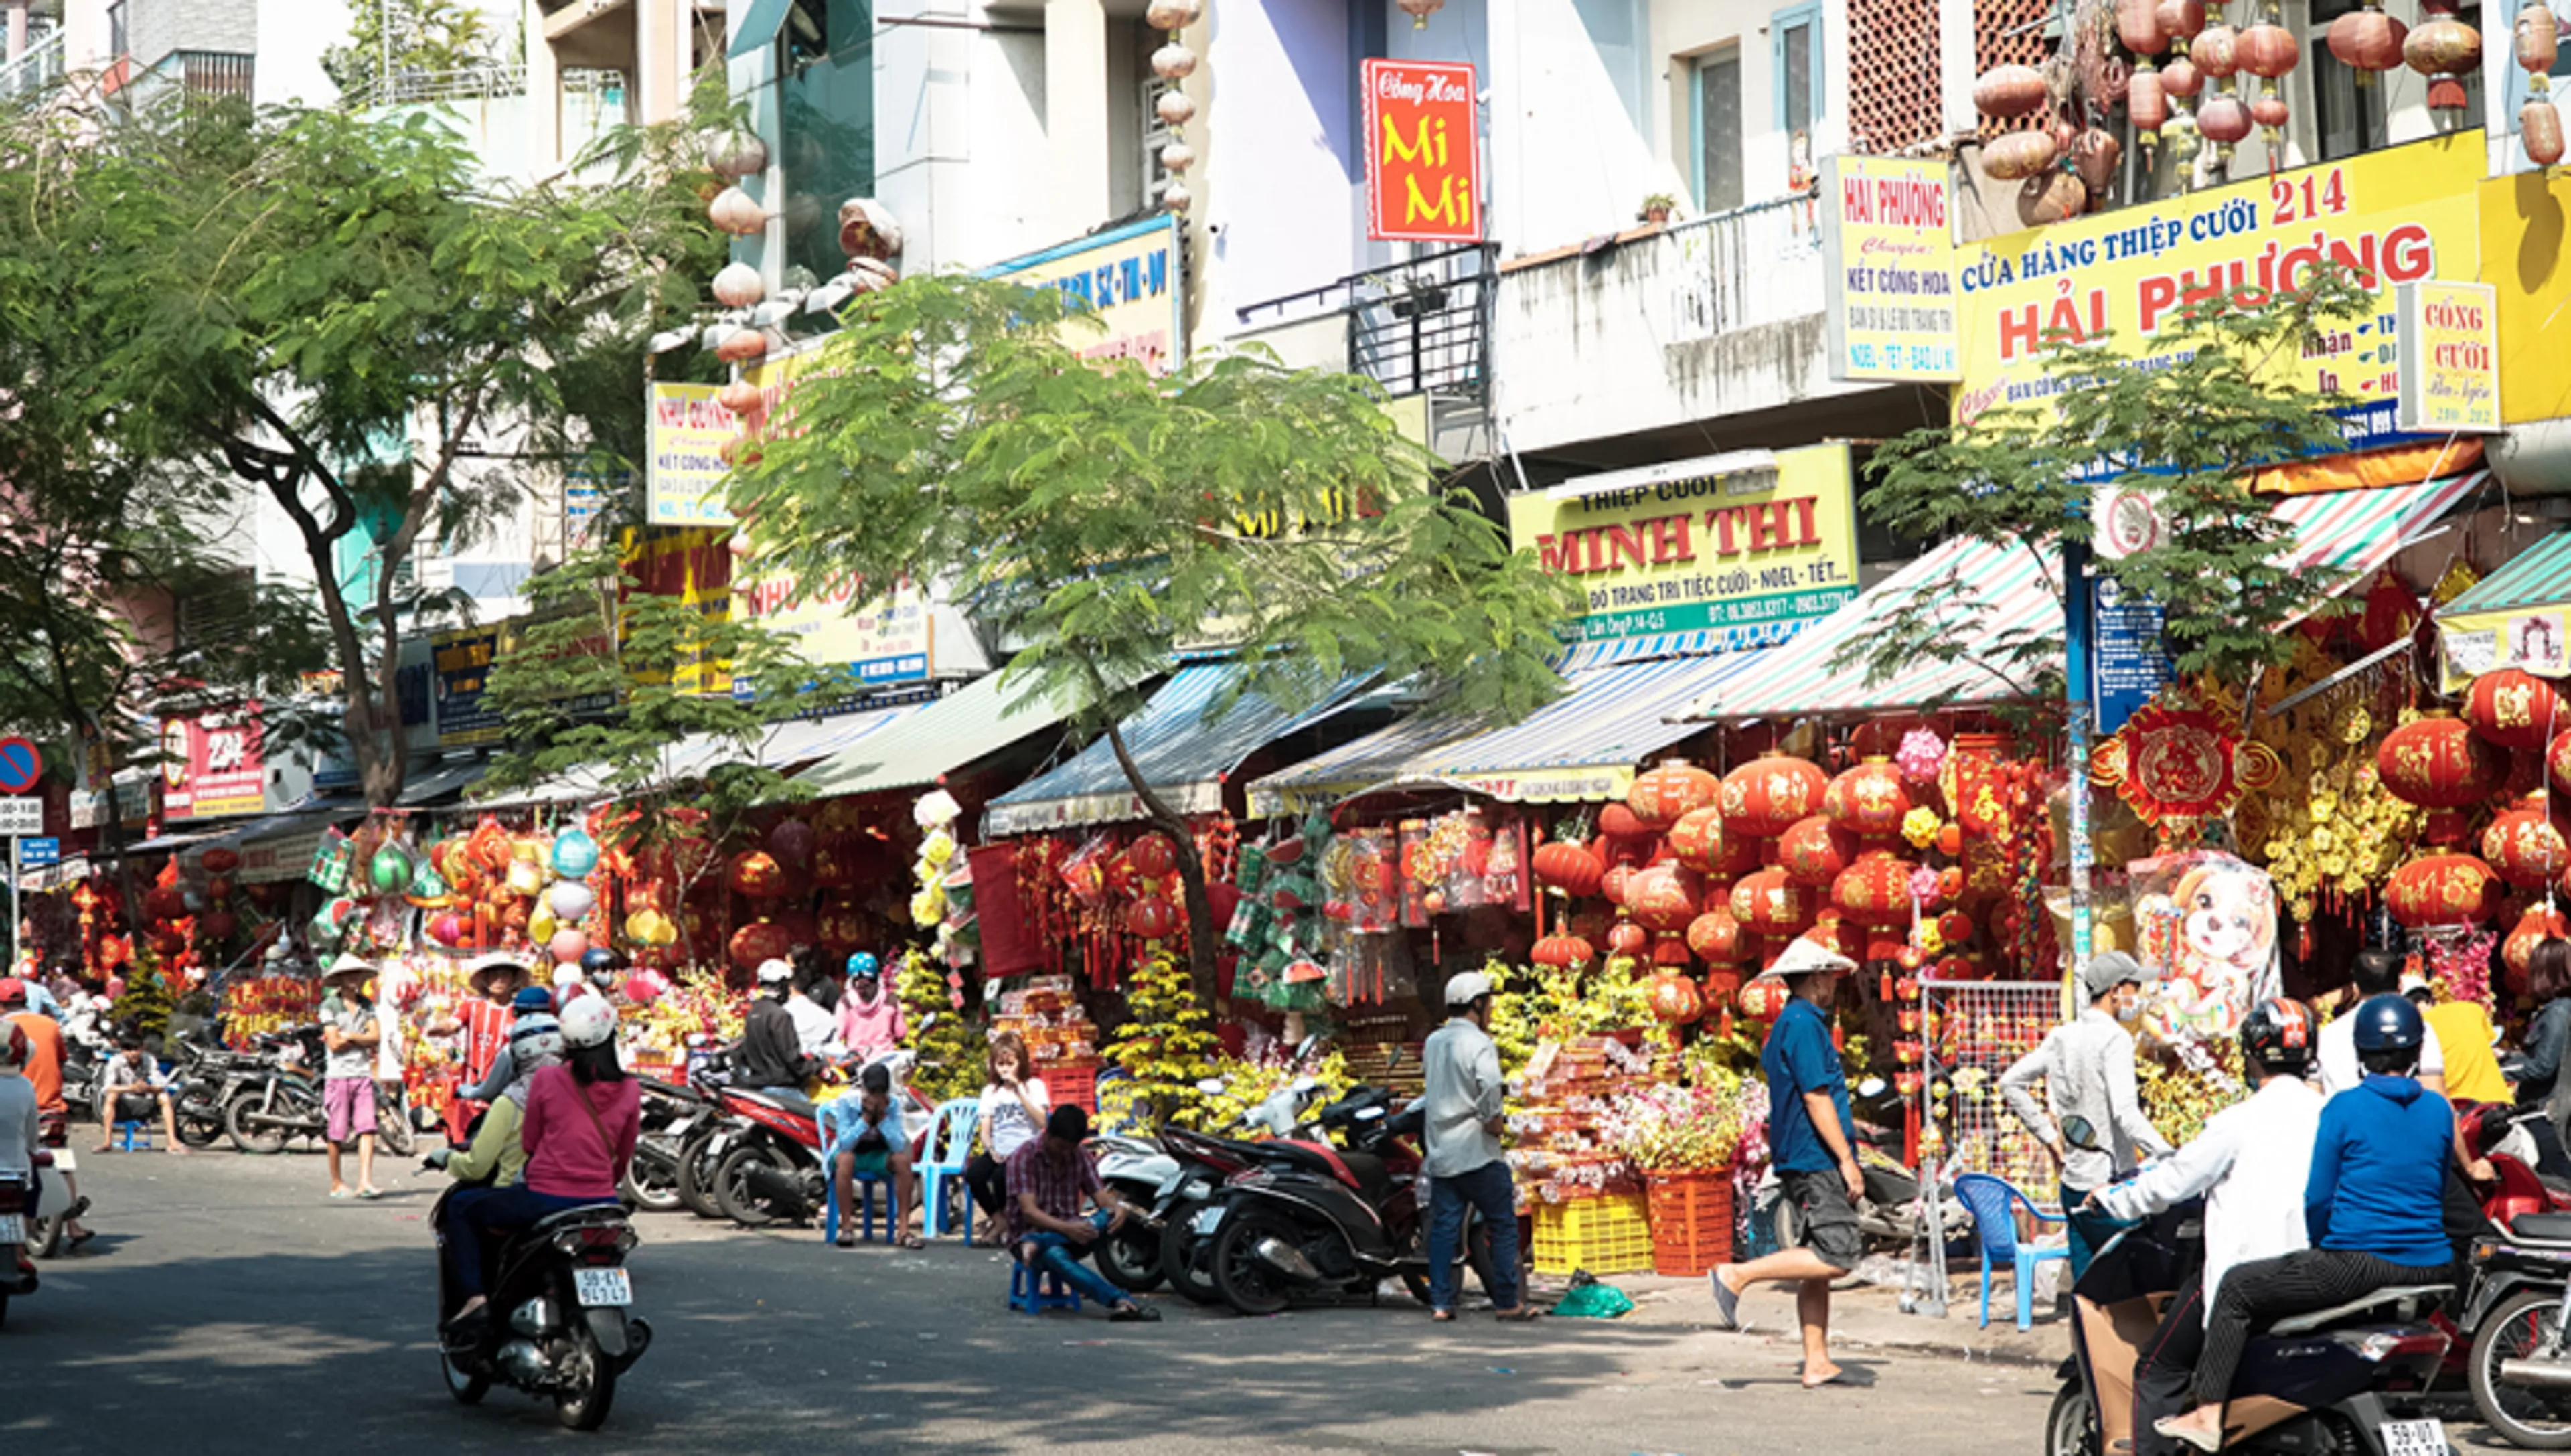 Khám phá văn hóa độc đáo phố người Hoa quận 5 giữa lòng Sài Gòn sôi động